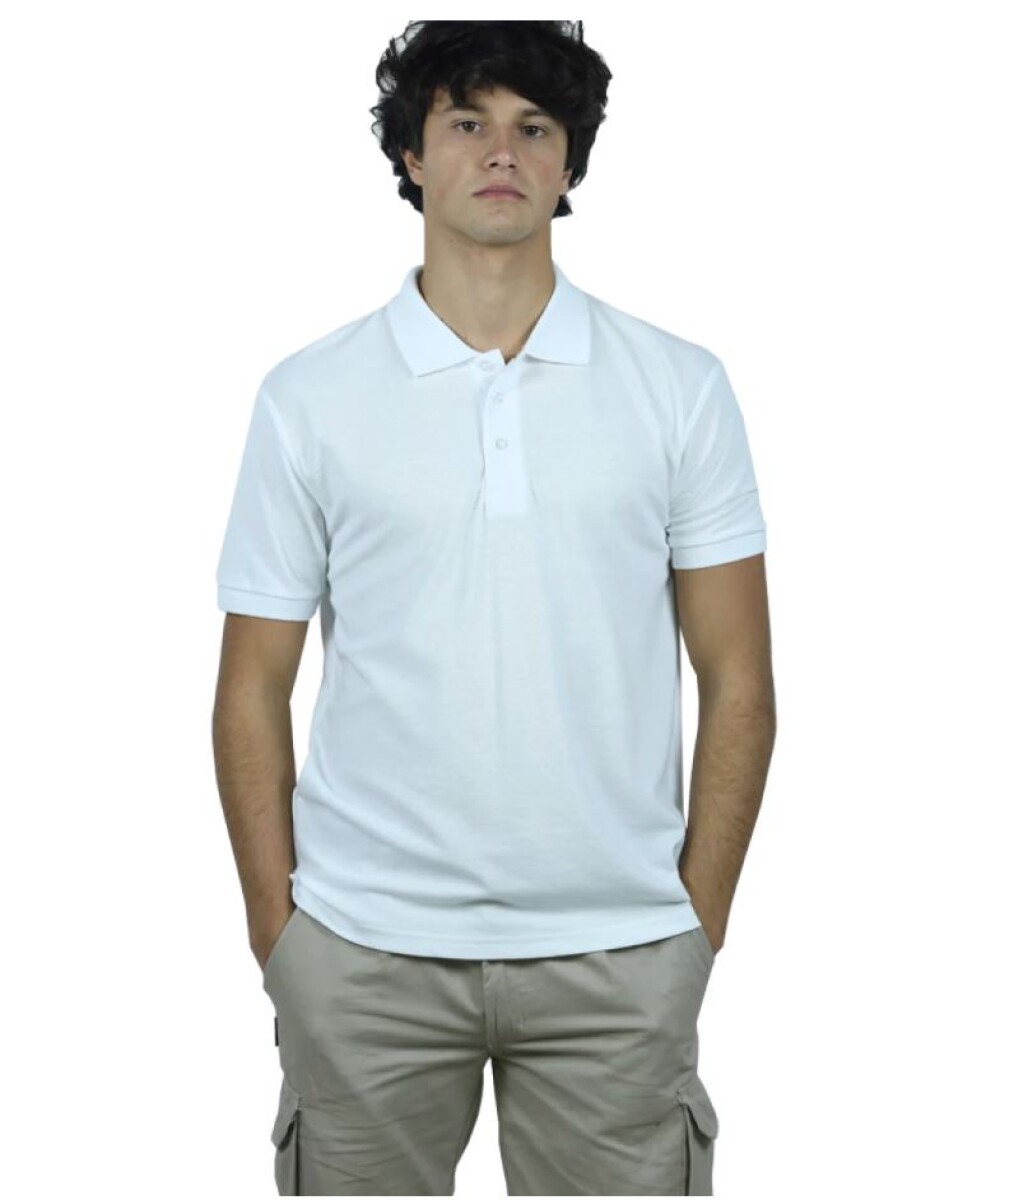 Remera Polo Premium - Blanco 